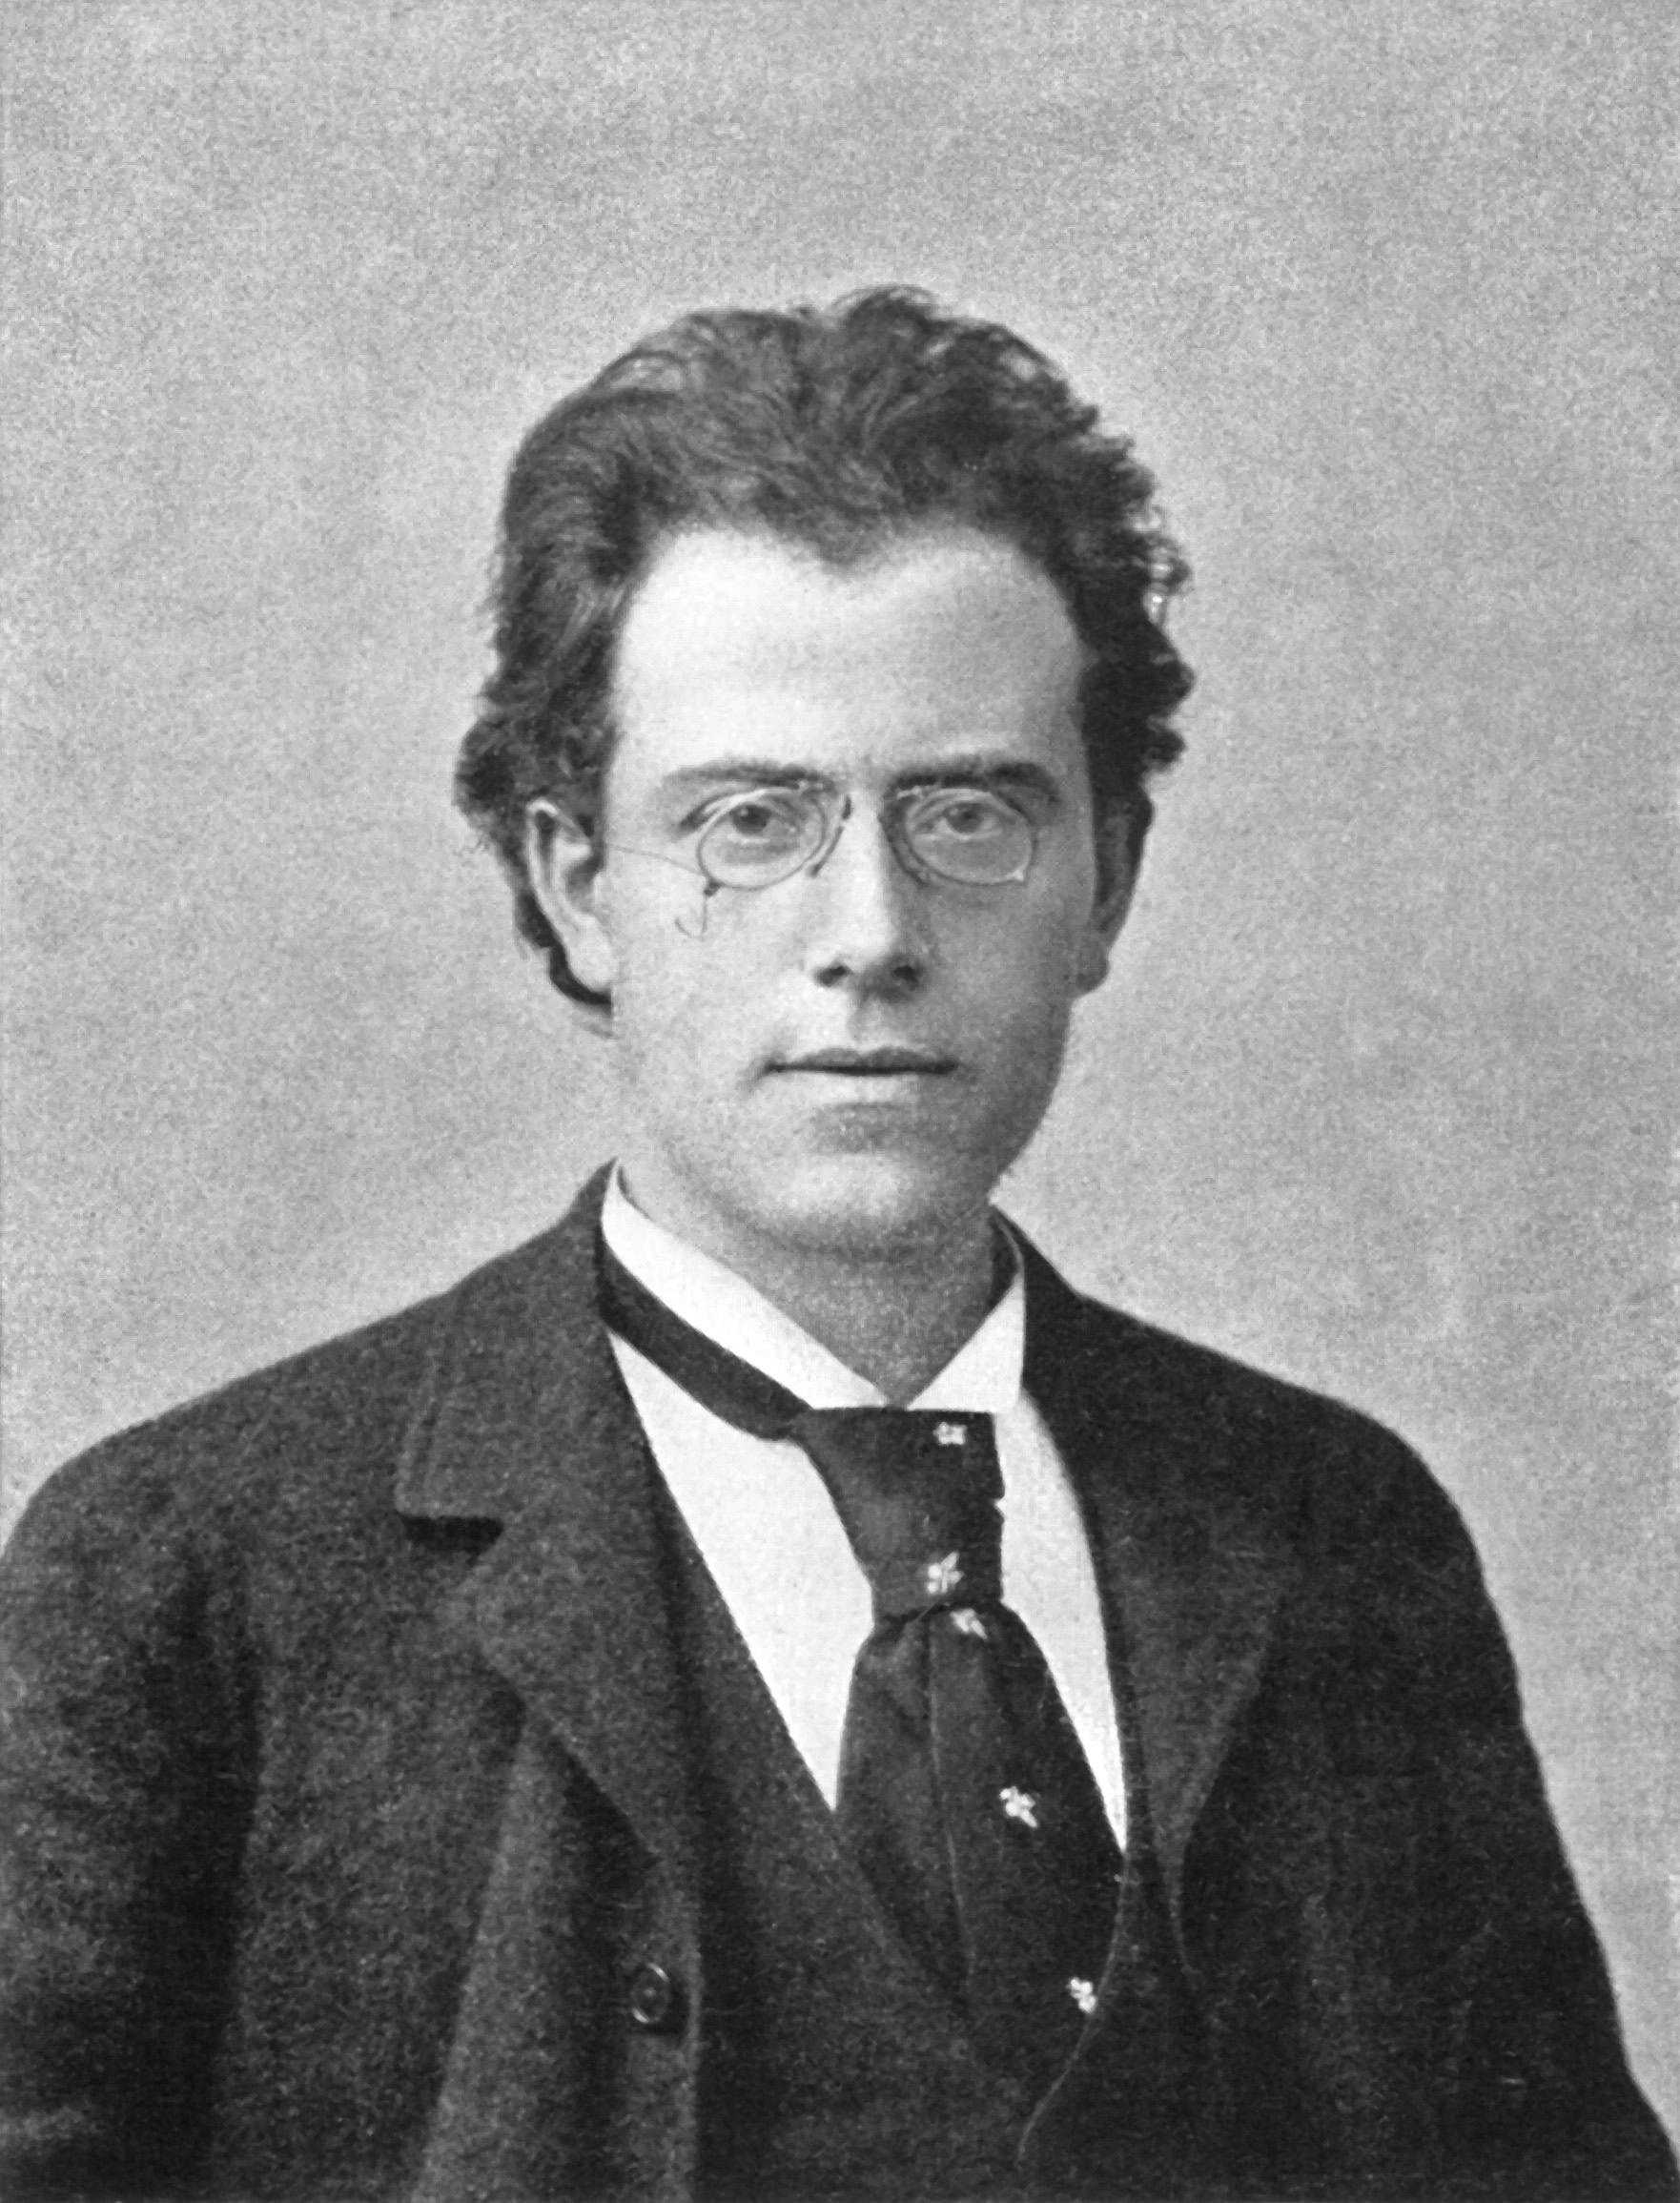 Gustav_Mahler_1860-1911.jpg